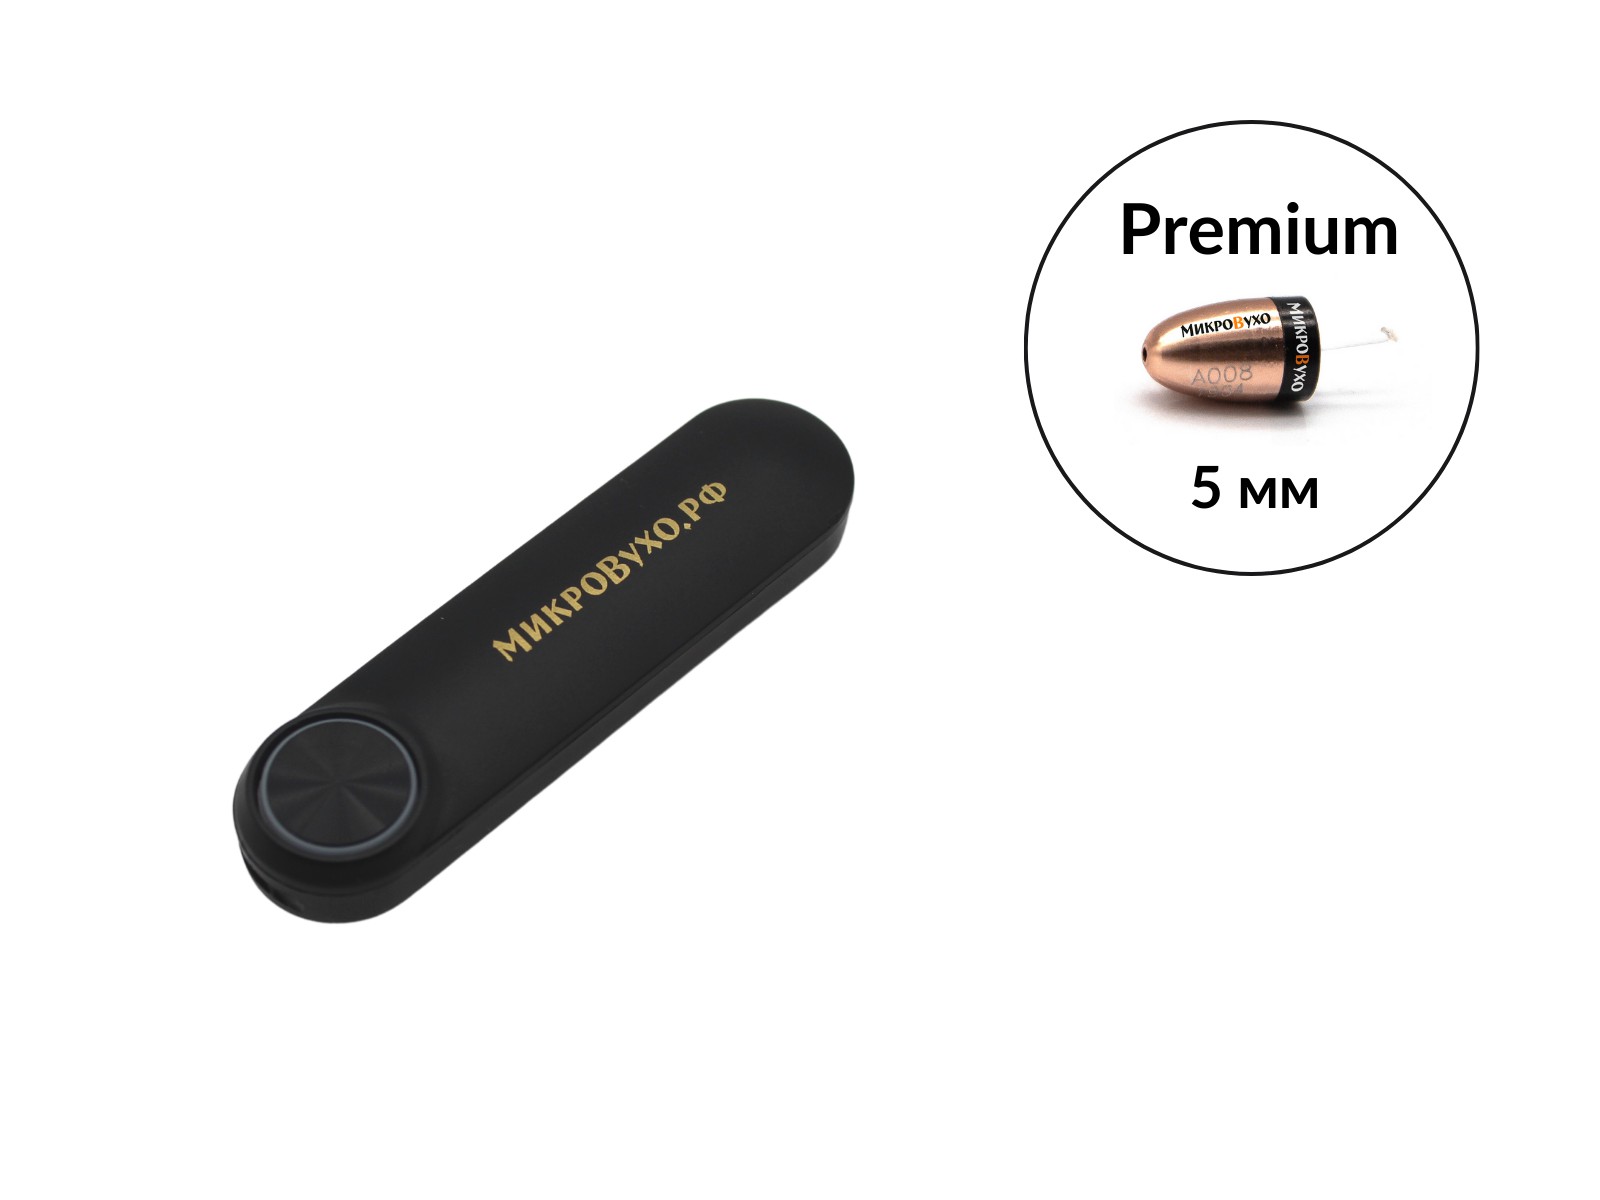 Гарнитура Bluetooth Box Standard с капсульным микронаушником Premium - изображение